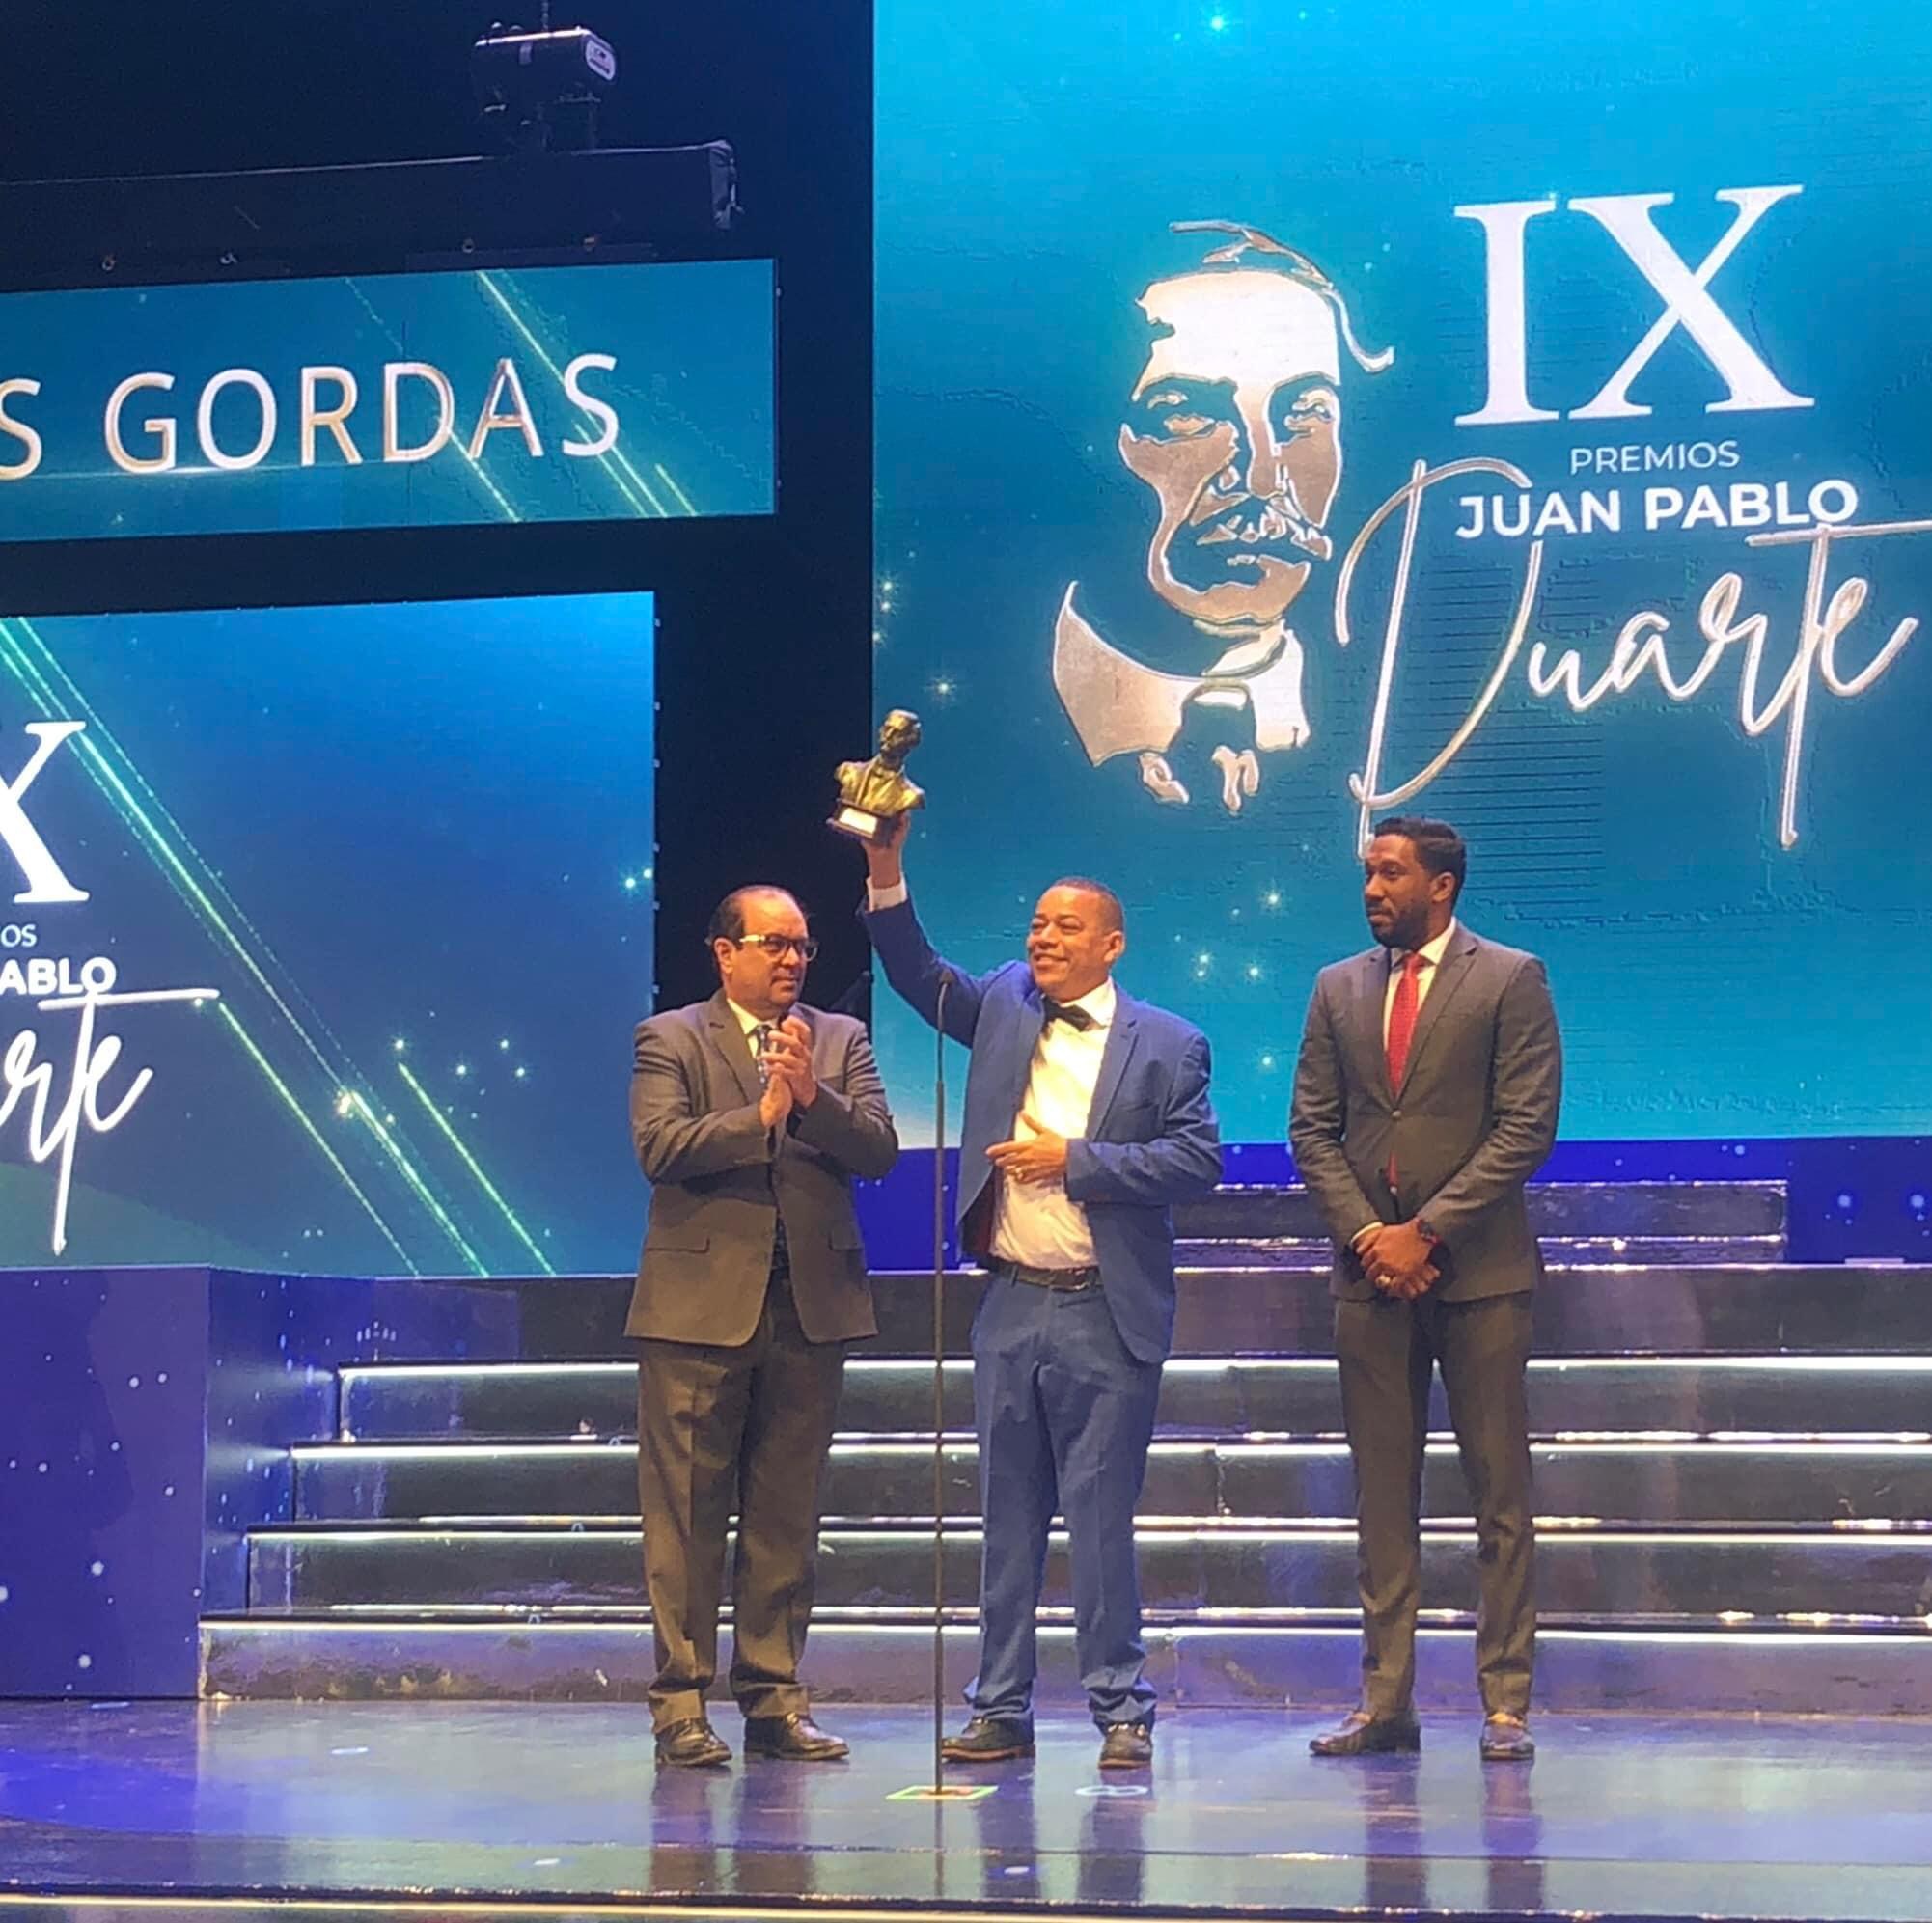 El Ayuntamiento del Distrito de Las Gordas gana premio Juan Pablo Duarte en el Renglón Desarrollo Cultural y Deportivo